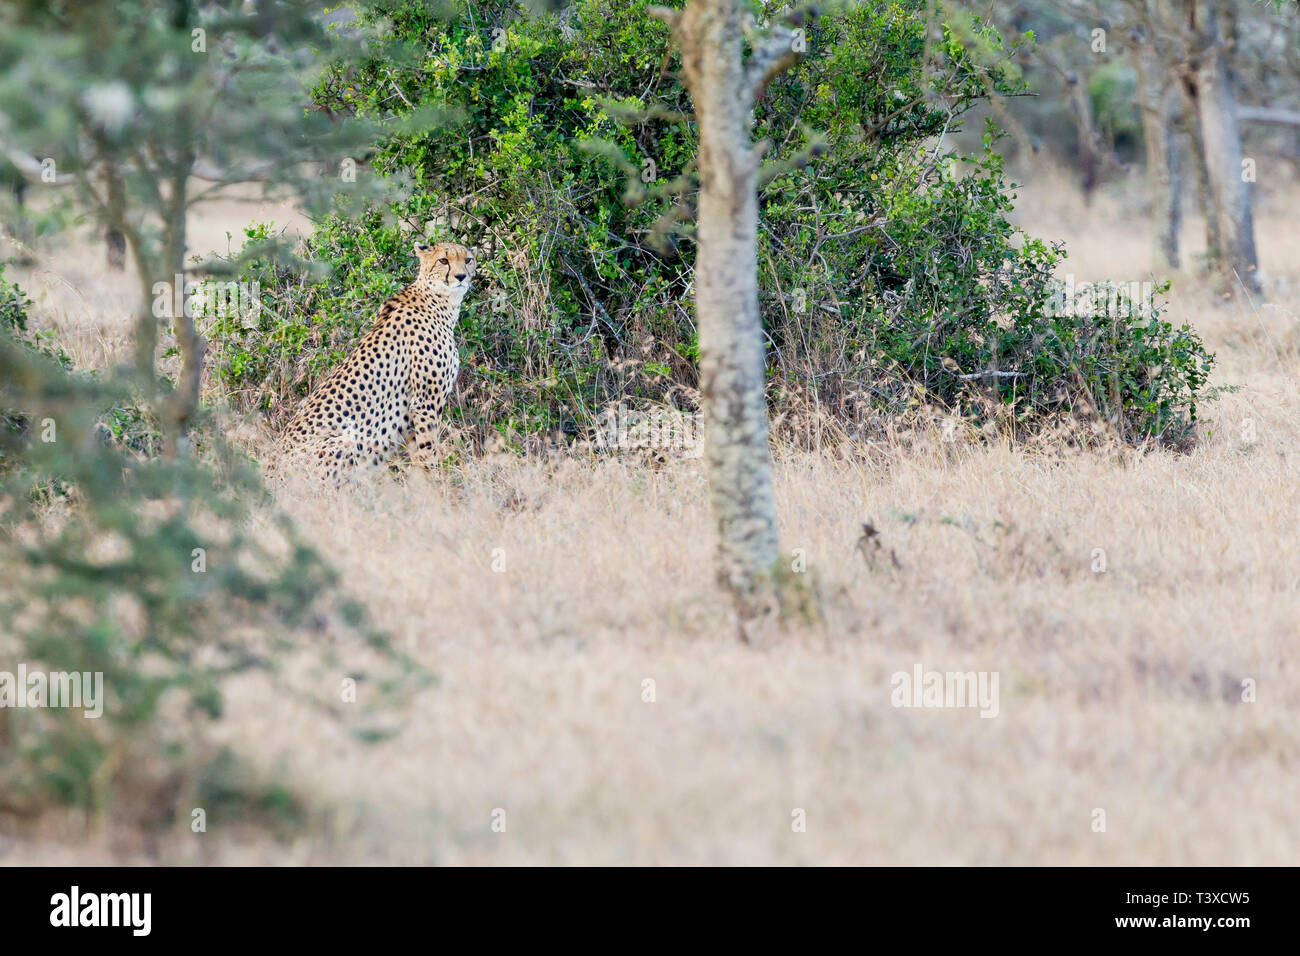 Ein erwachsener Gepardin im offenen Grasland, saßen und, beginnend zu jagen, Querformat, Ol Pejeta Conservancy, Laikipia, Kenia, Afrika Stockfoto